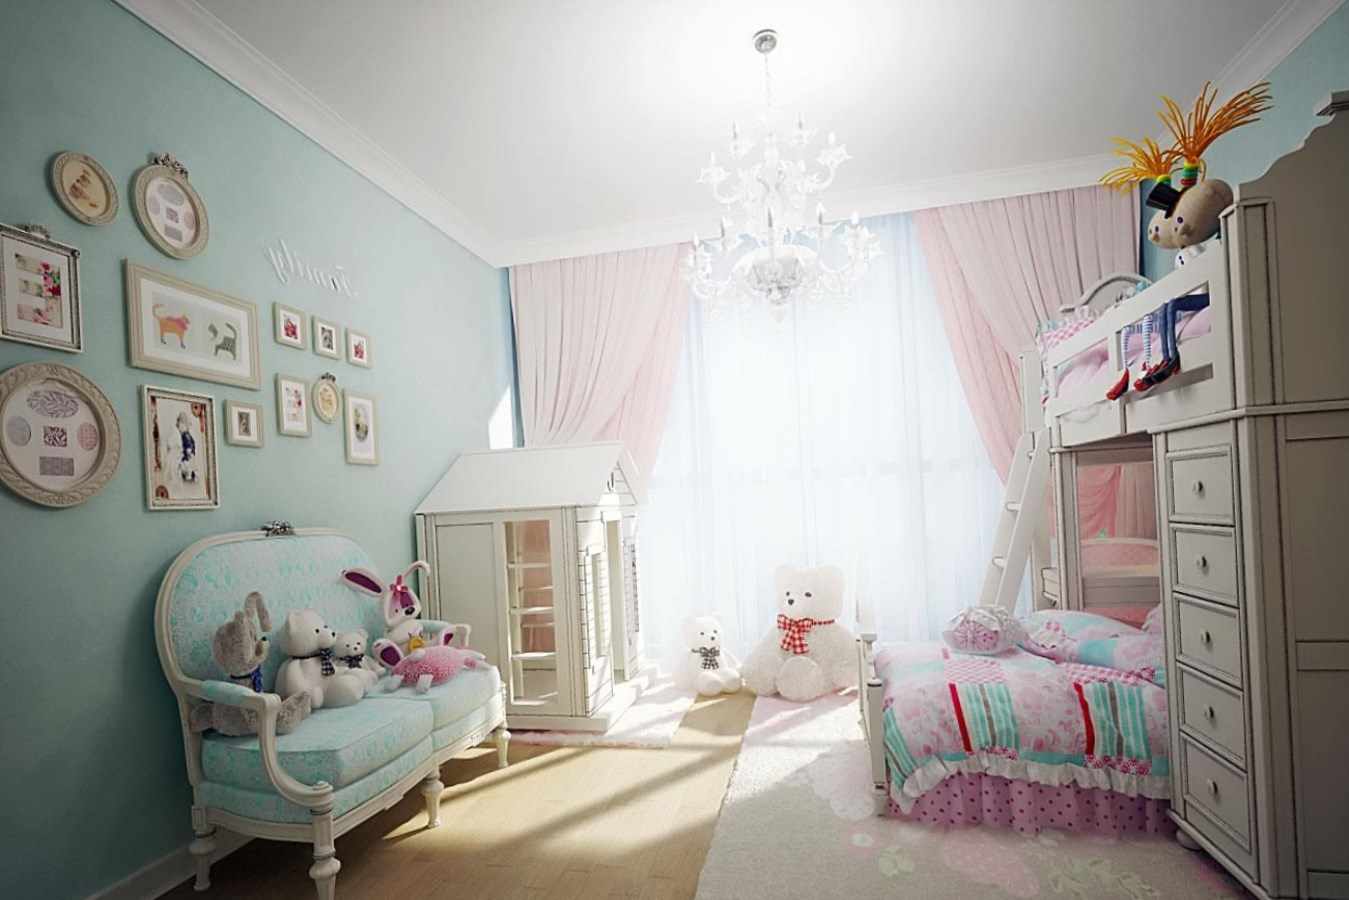 bir kız için bir yatak odası güzel bir tasarım fikri